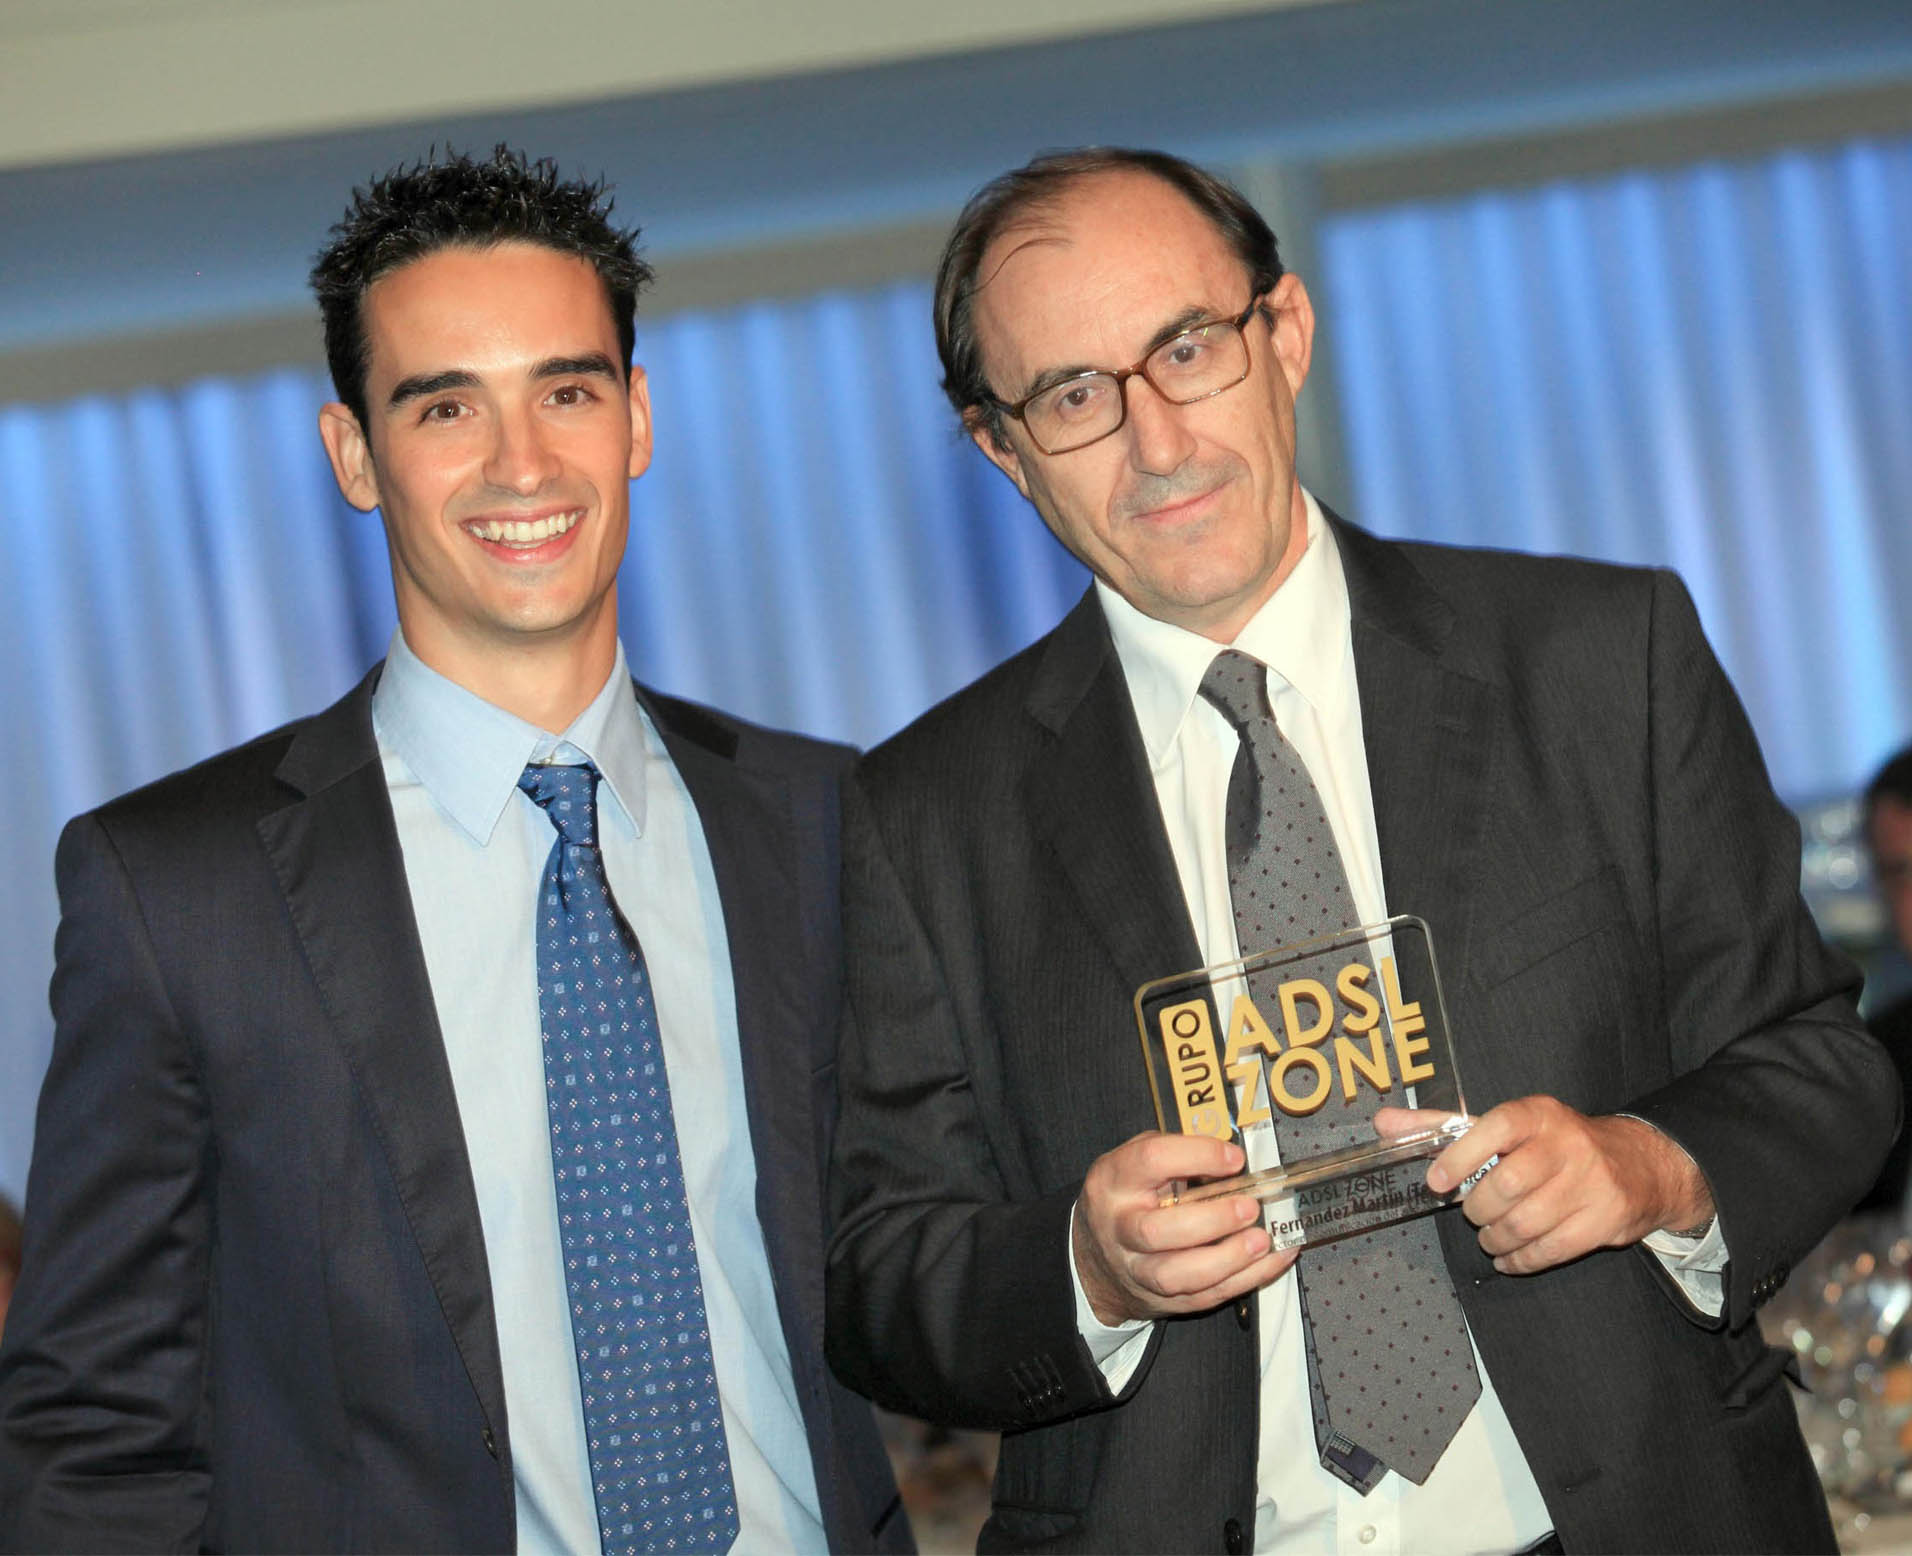 Foto: El fundador del Grupo ADSL Zone, JavierSanz, entrega el premio a Mauricio Fernández, director de Comunicación de Telefónica.